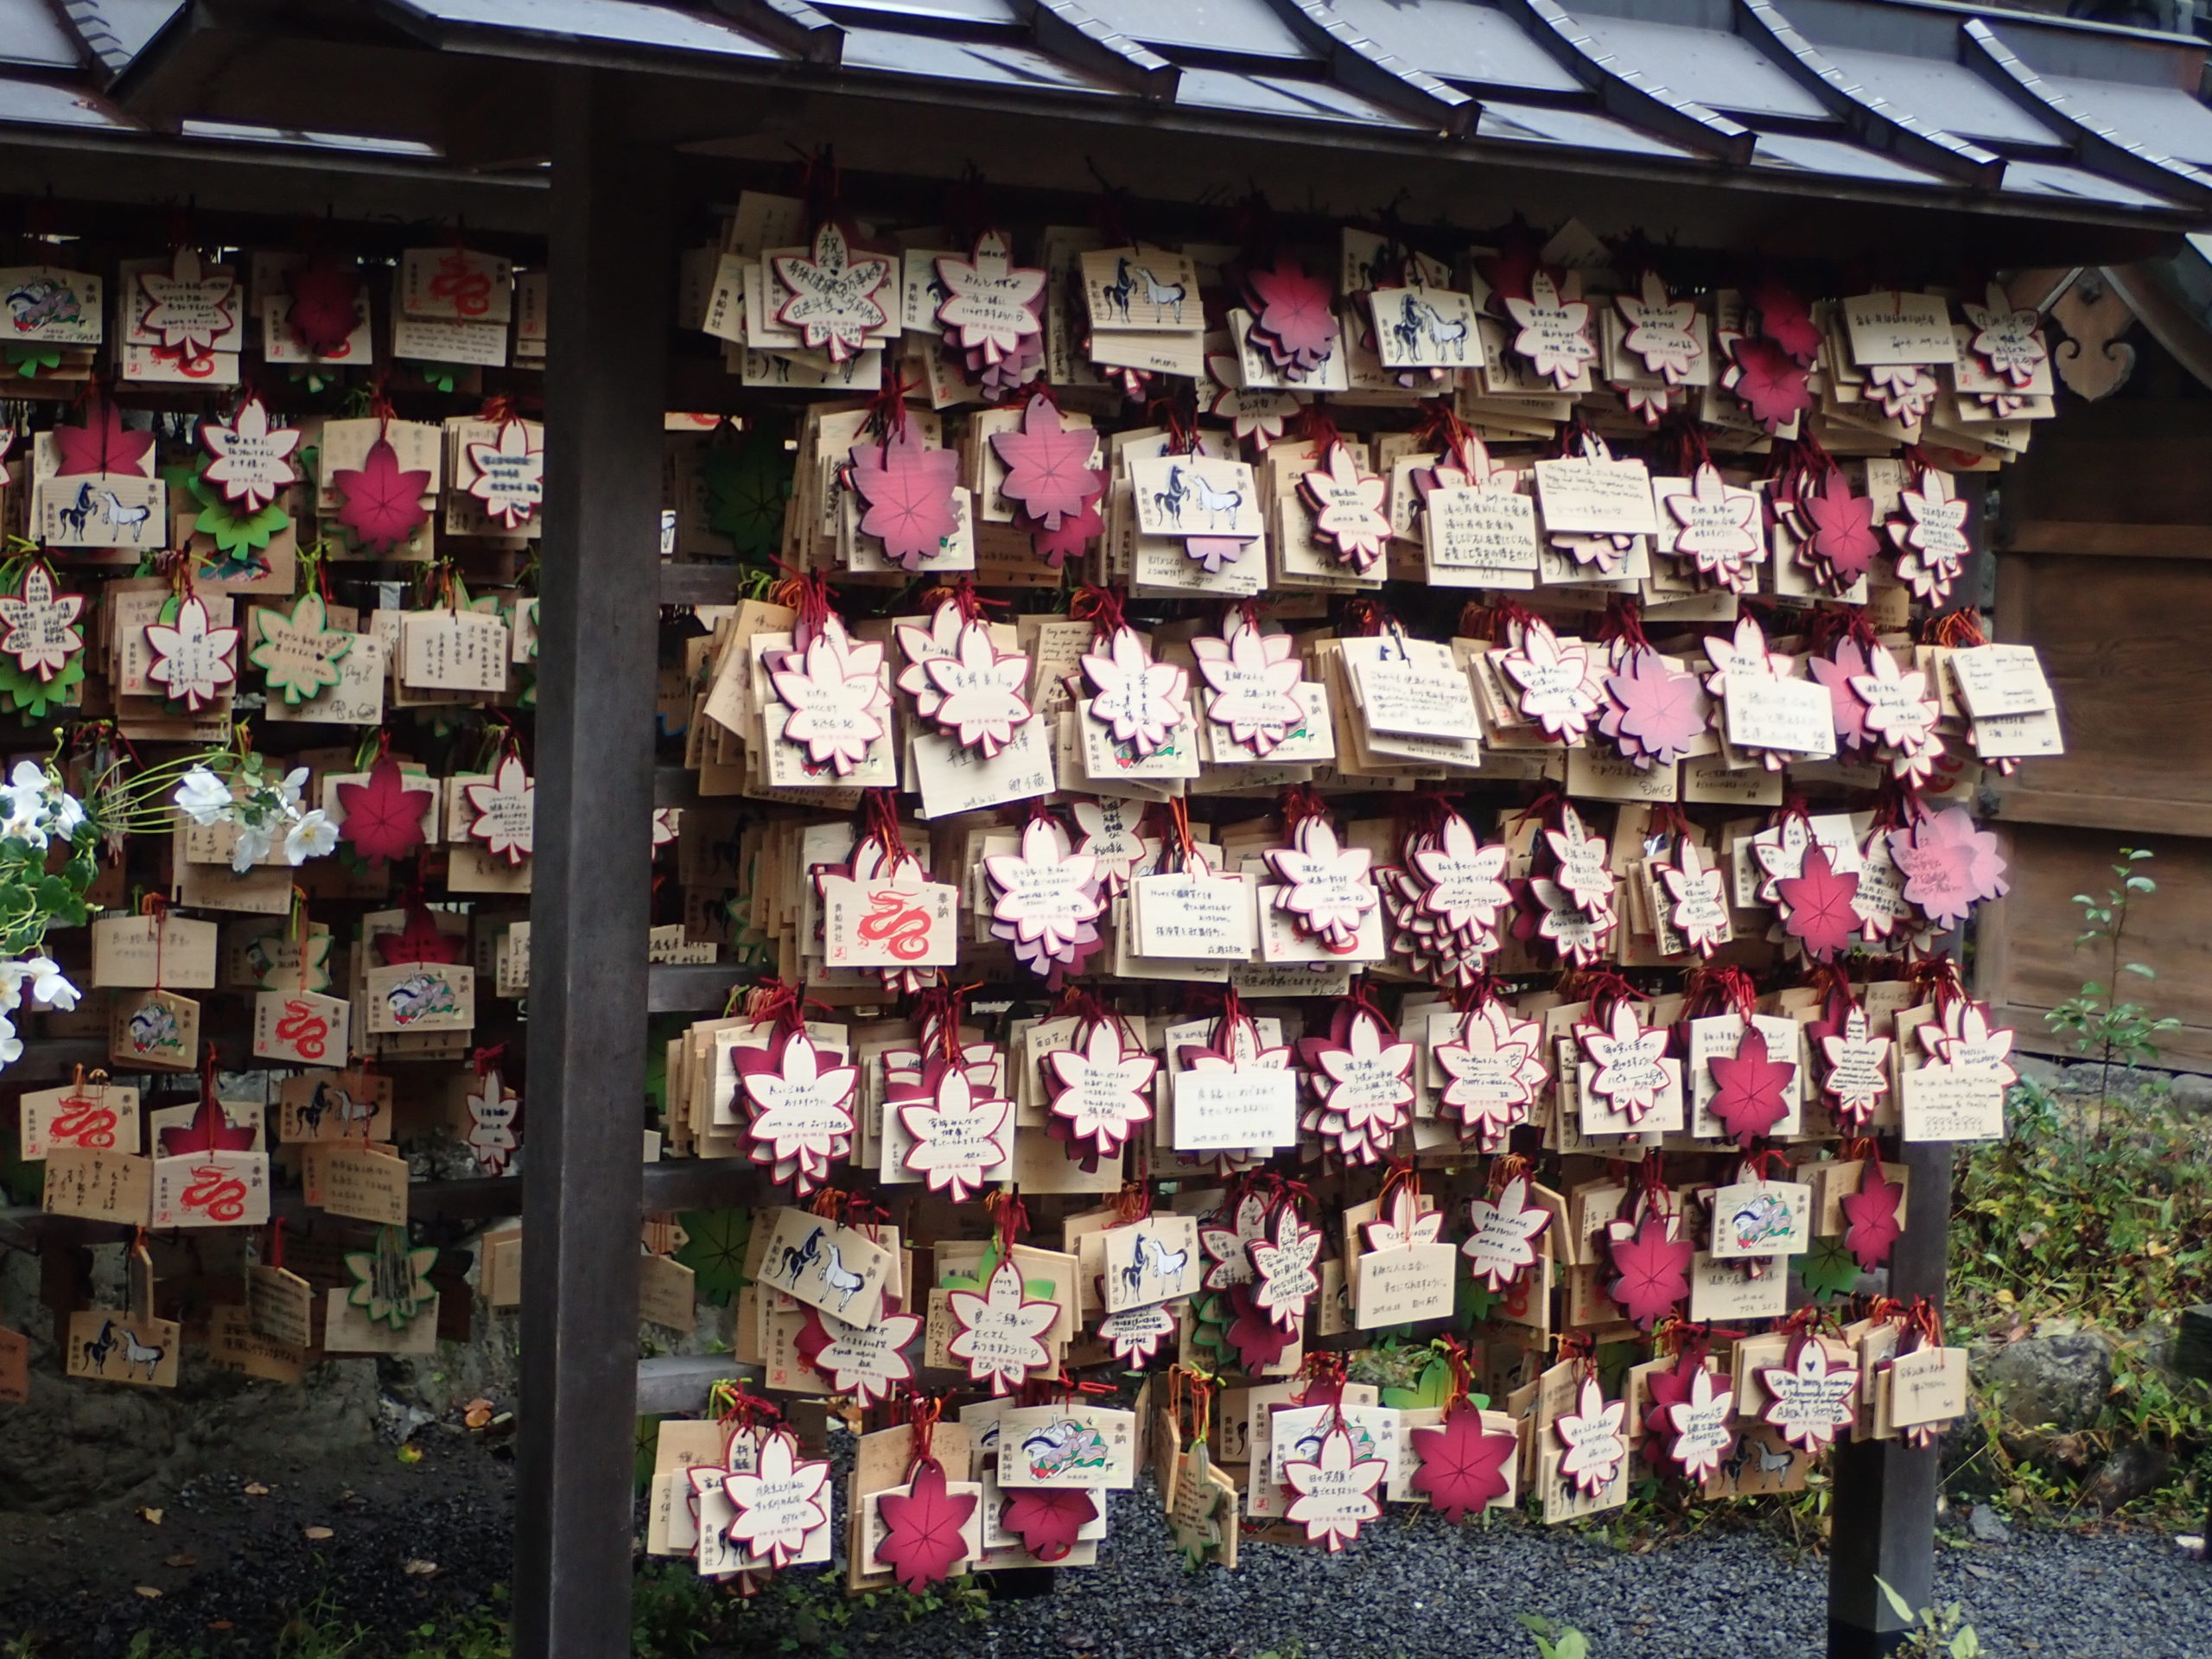 京都のパワースポット・貴船神社